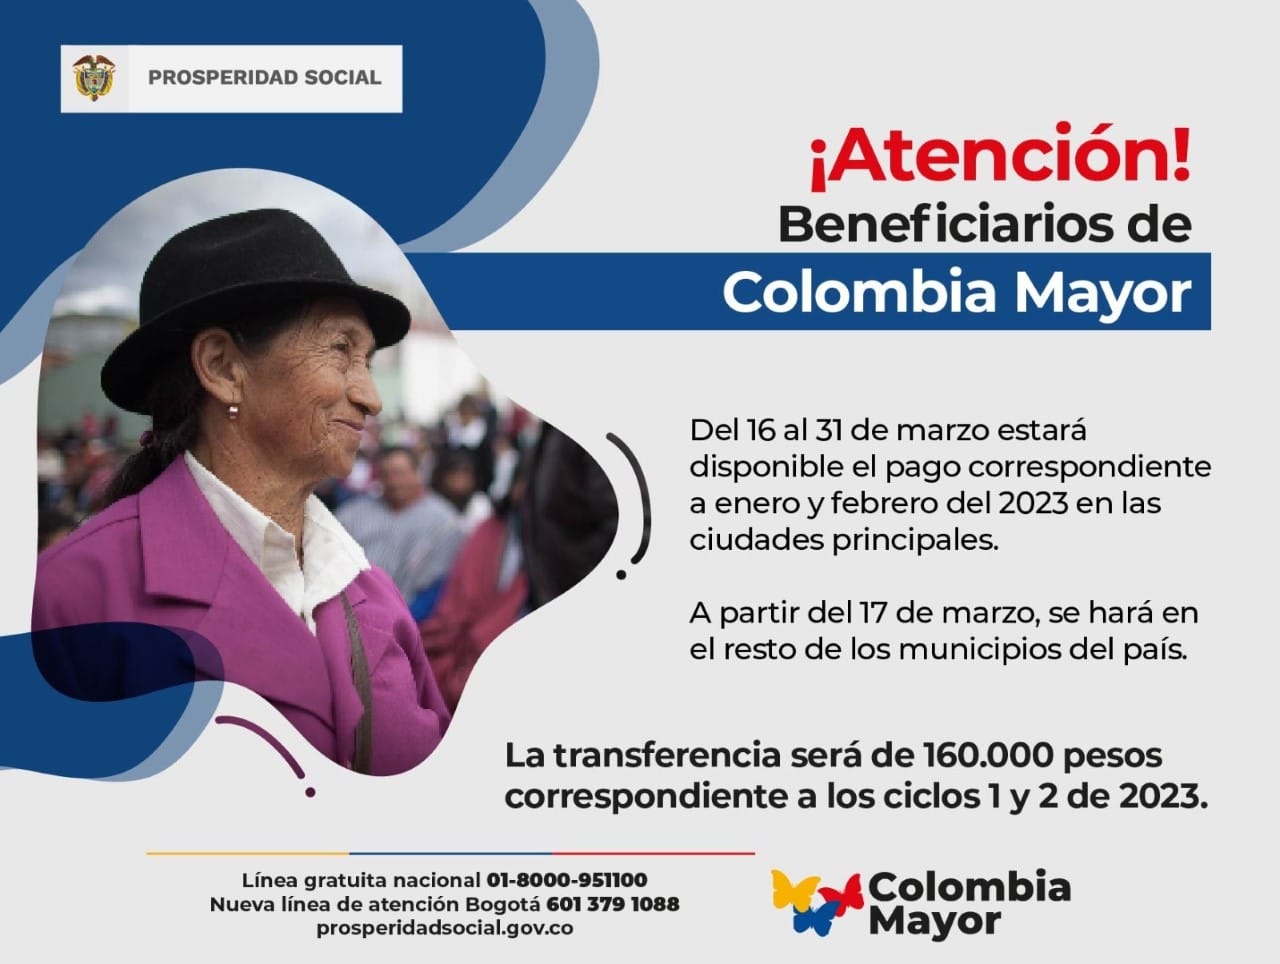 Atención beneficiarios de Colombia Mayor